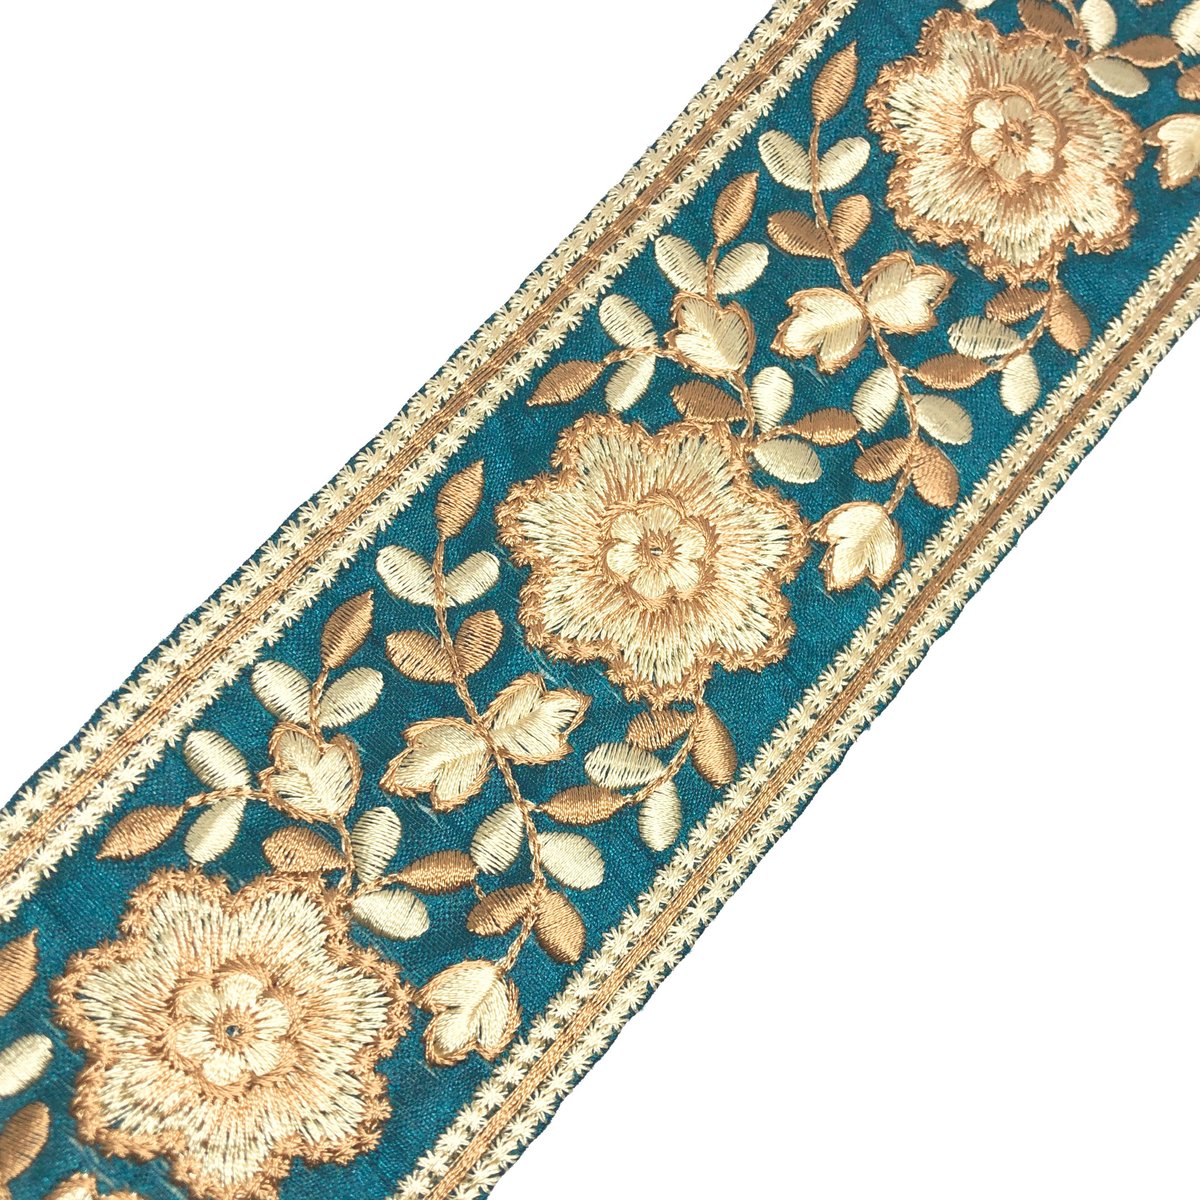 インド刺繍リボン 金 ゴールド 花 ブルー 青 手芸テープ 刺繍レースプリンセス